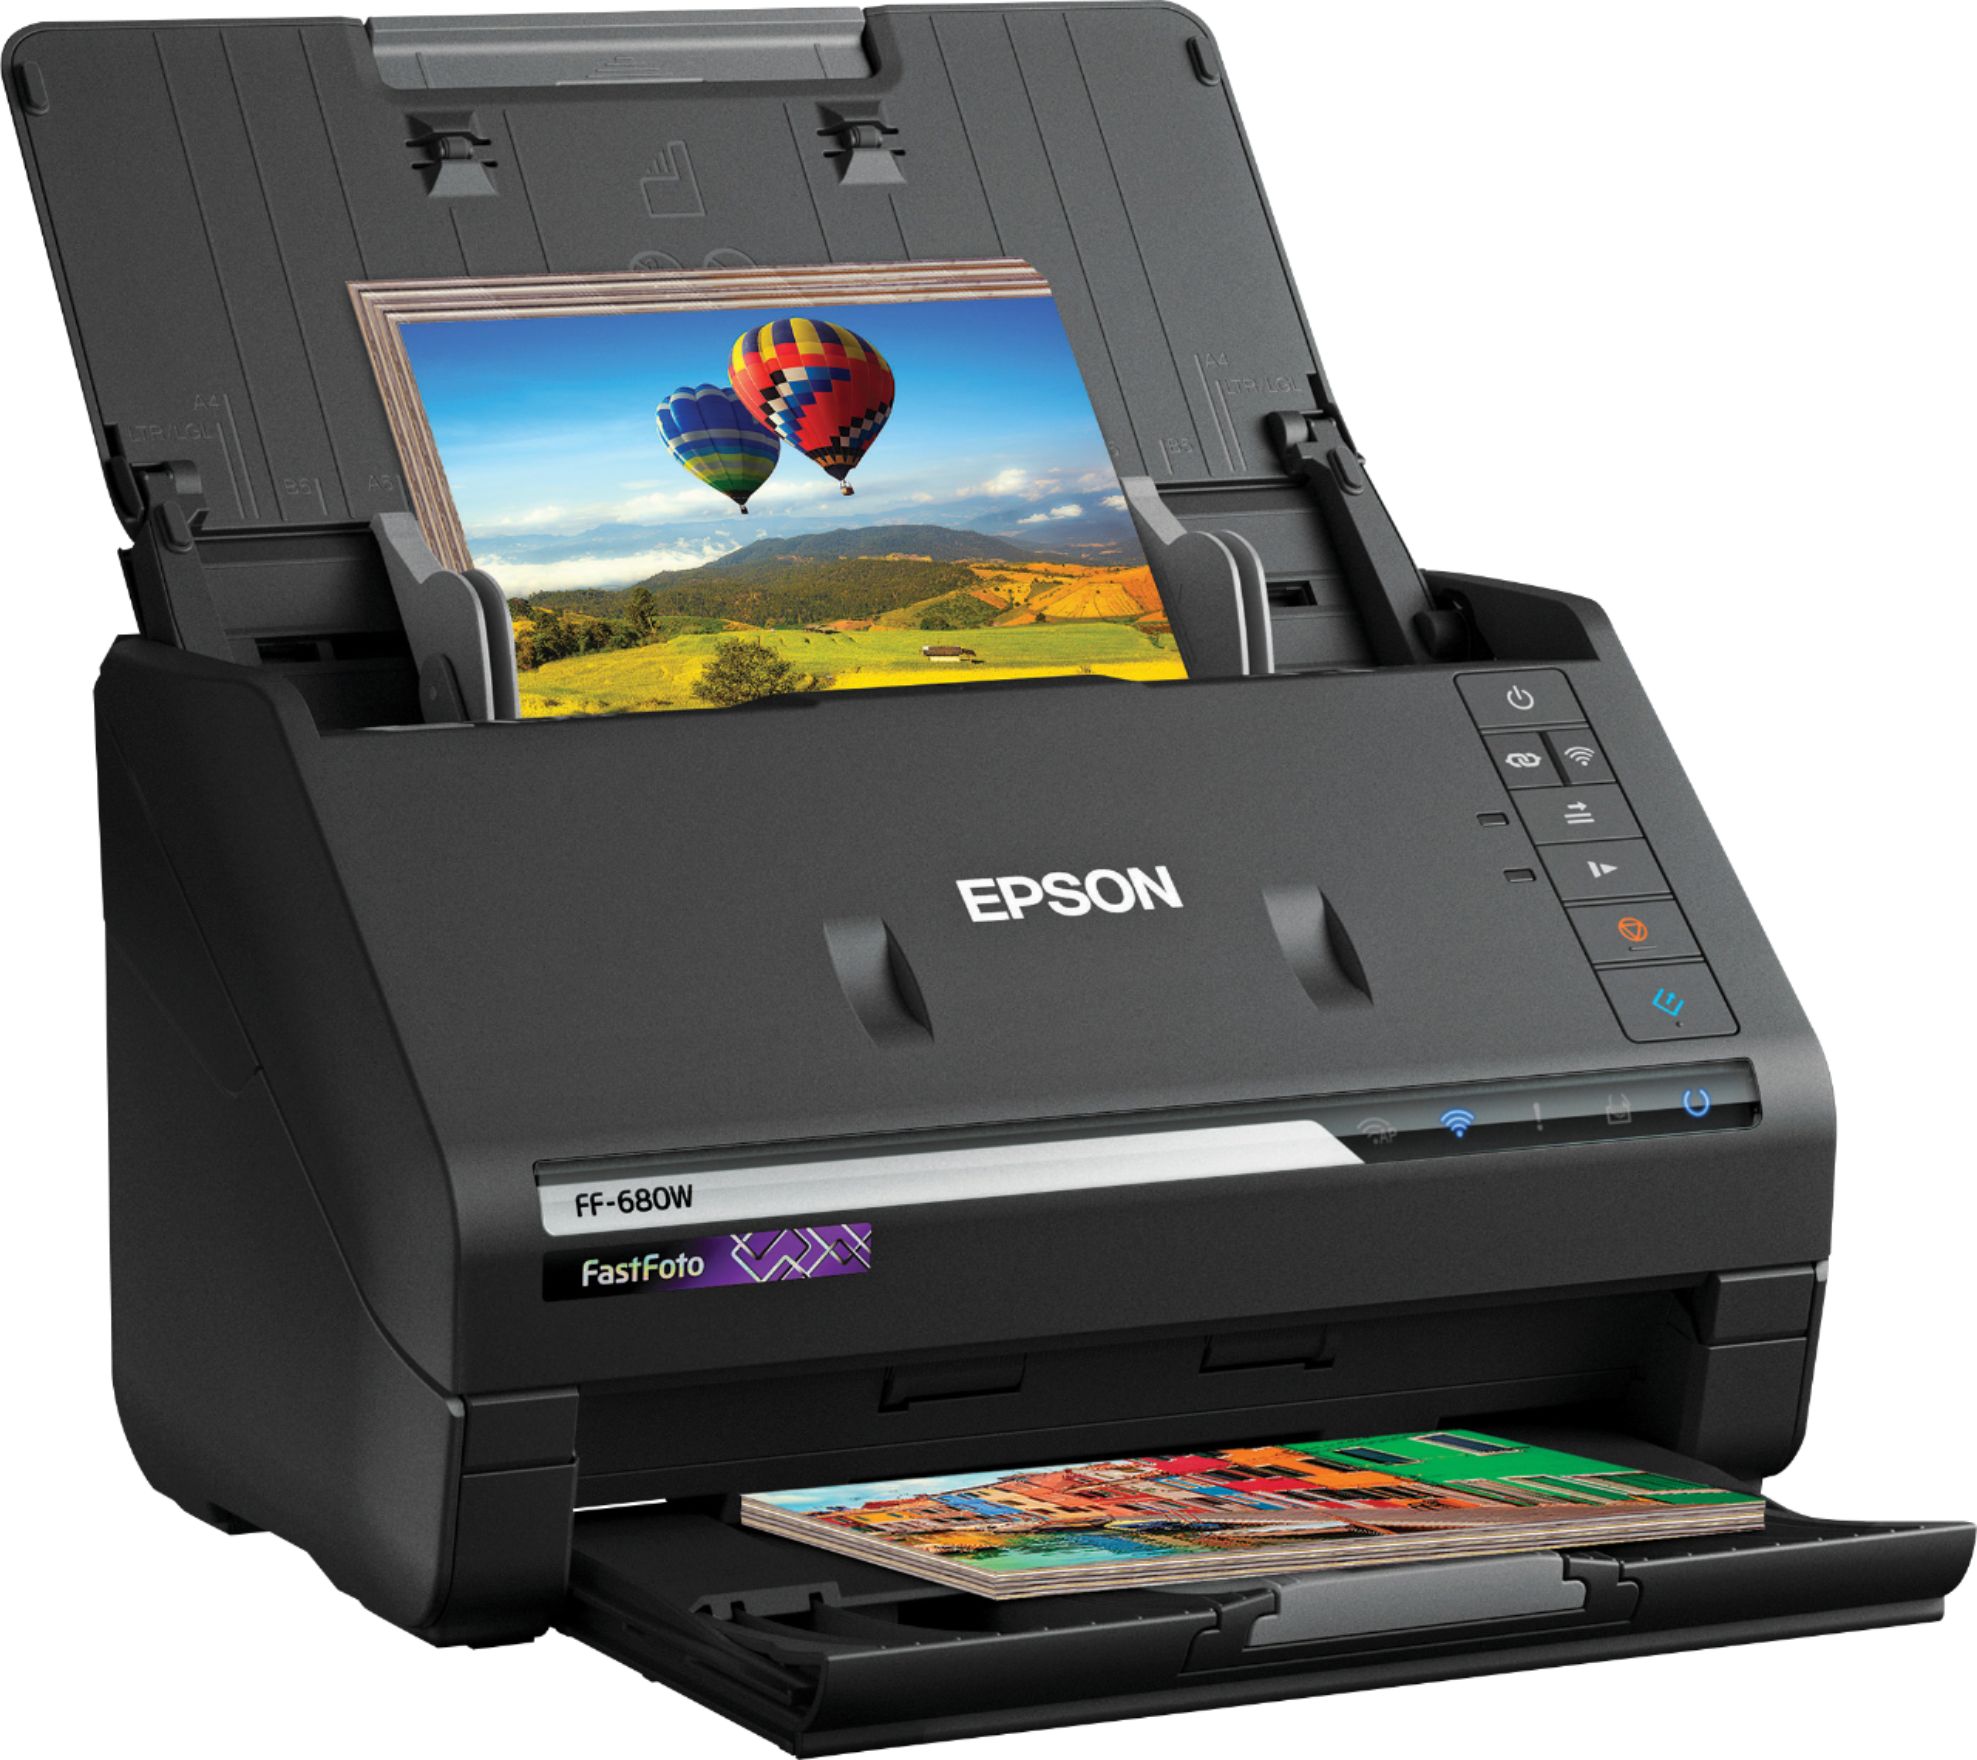 Epson FastFoto FF-680W Wireless High-speed Photo Scanning System 